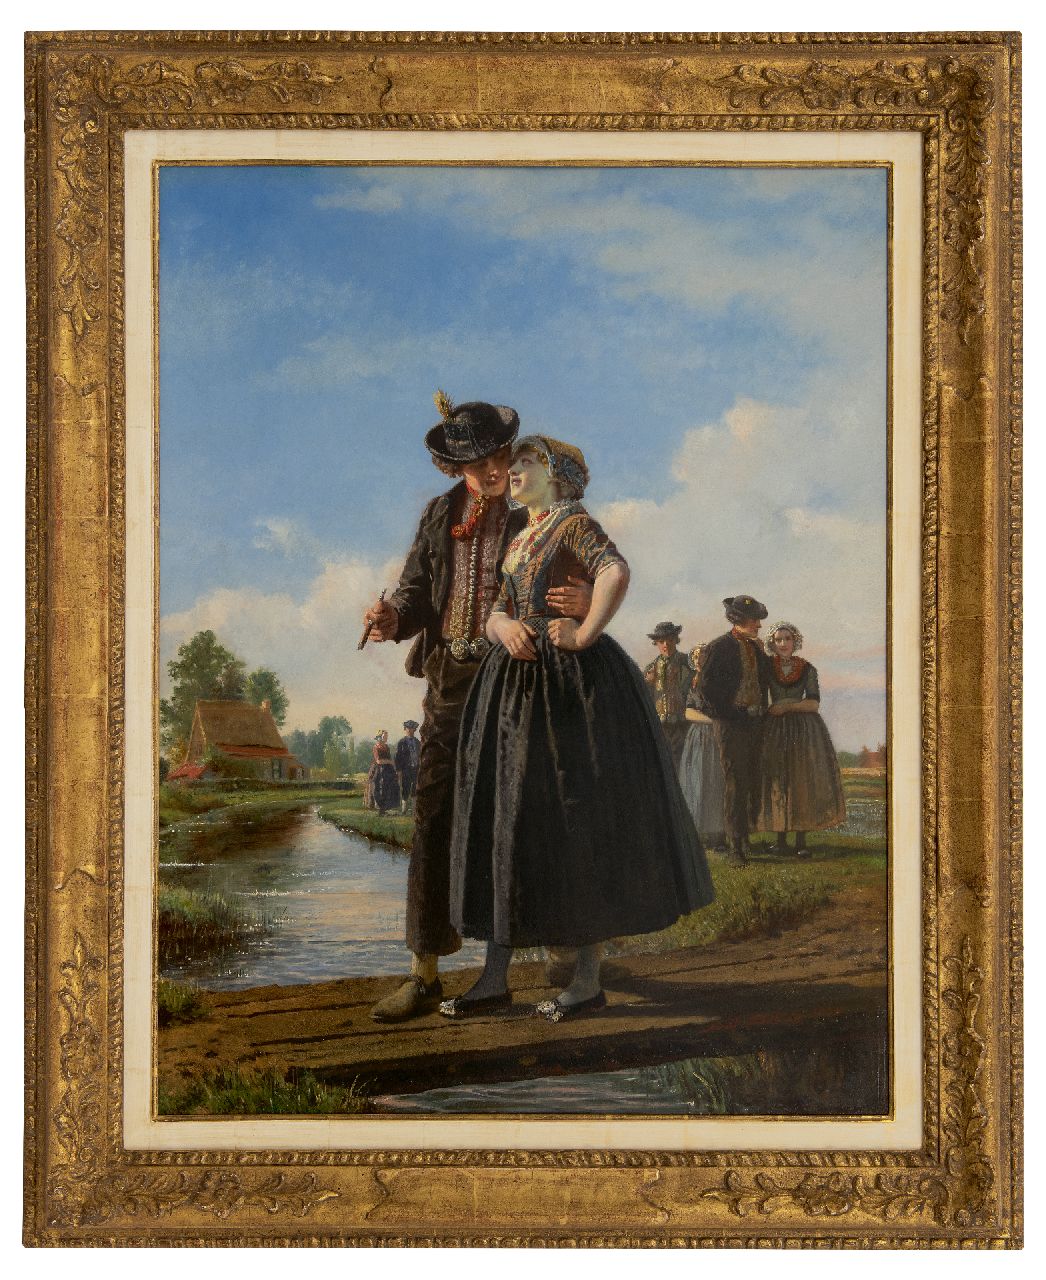 Dillens A.A.  | 'Adolf' Alexander Dillens | Schilderijen te koop aangeboden | La traversée du pont d'amour, olieverf op paneel 78,5 x 60,0 cm, gesigneerd rechtsonder en gedateerd 1855